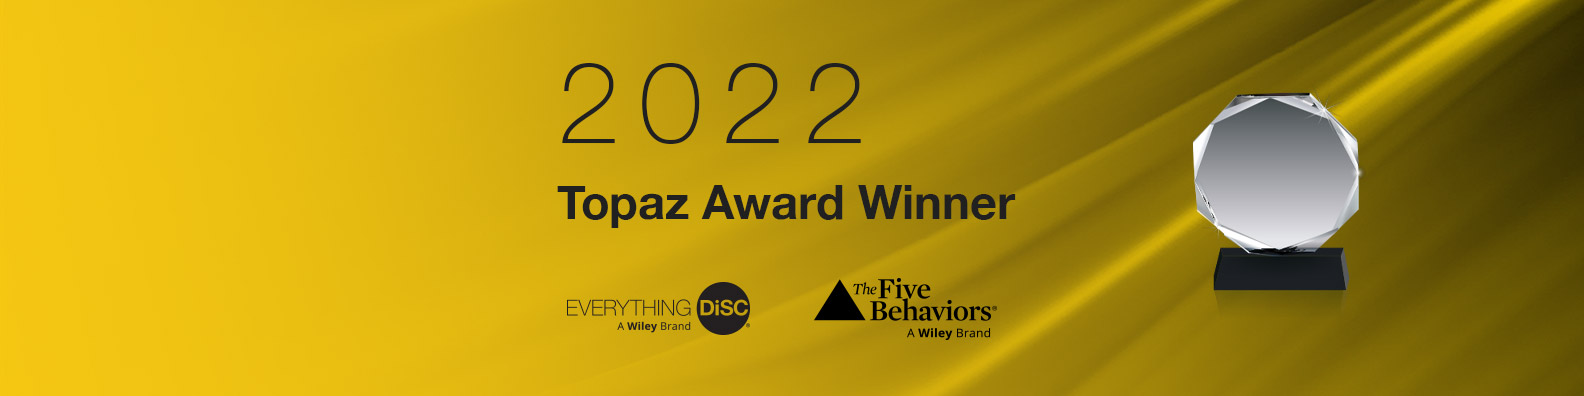 Topaz Award Winner